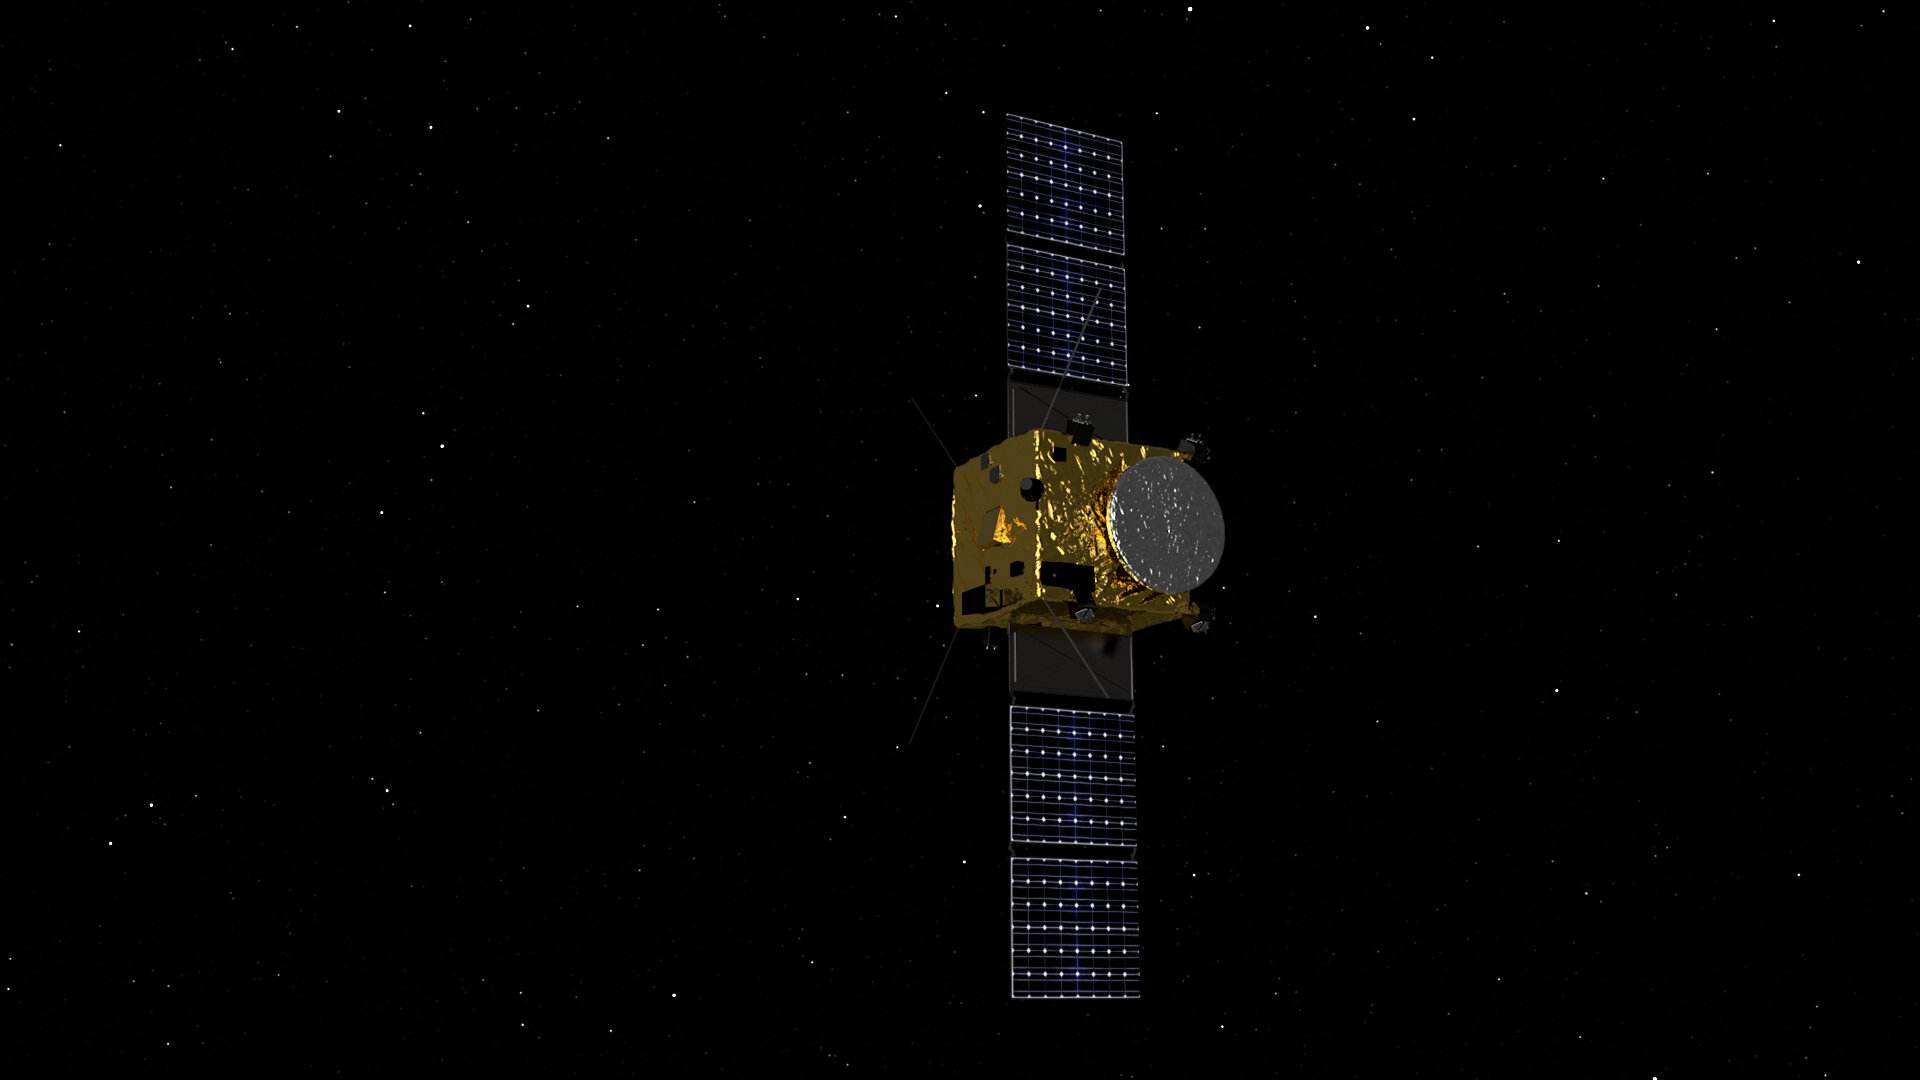 AIM spacecraft